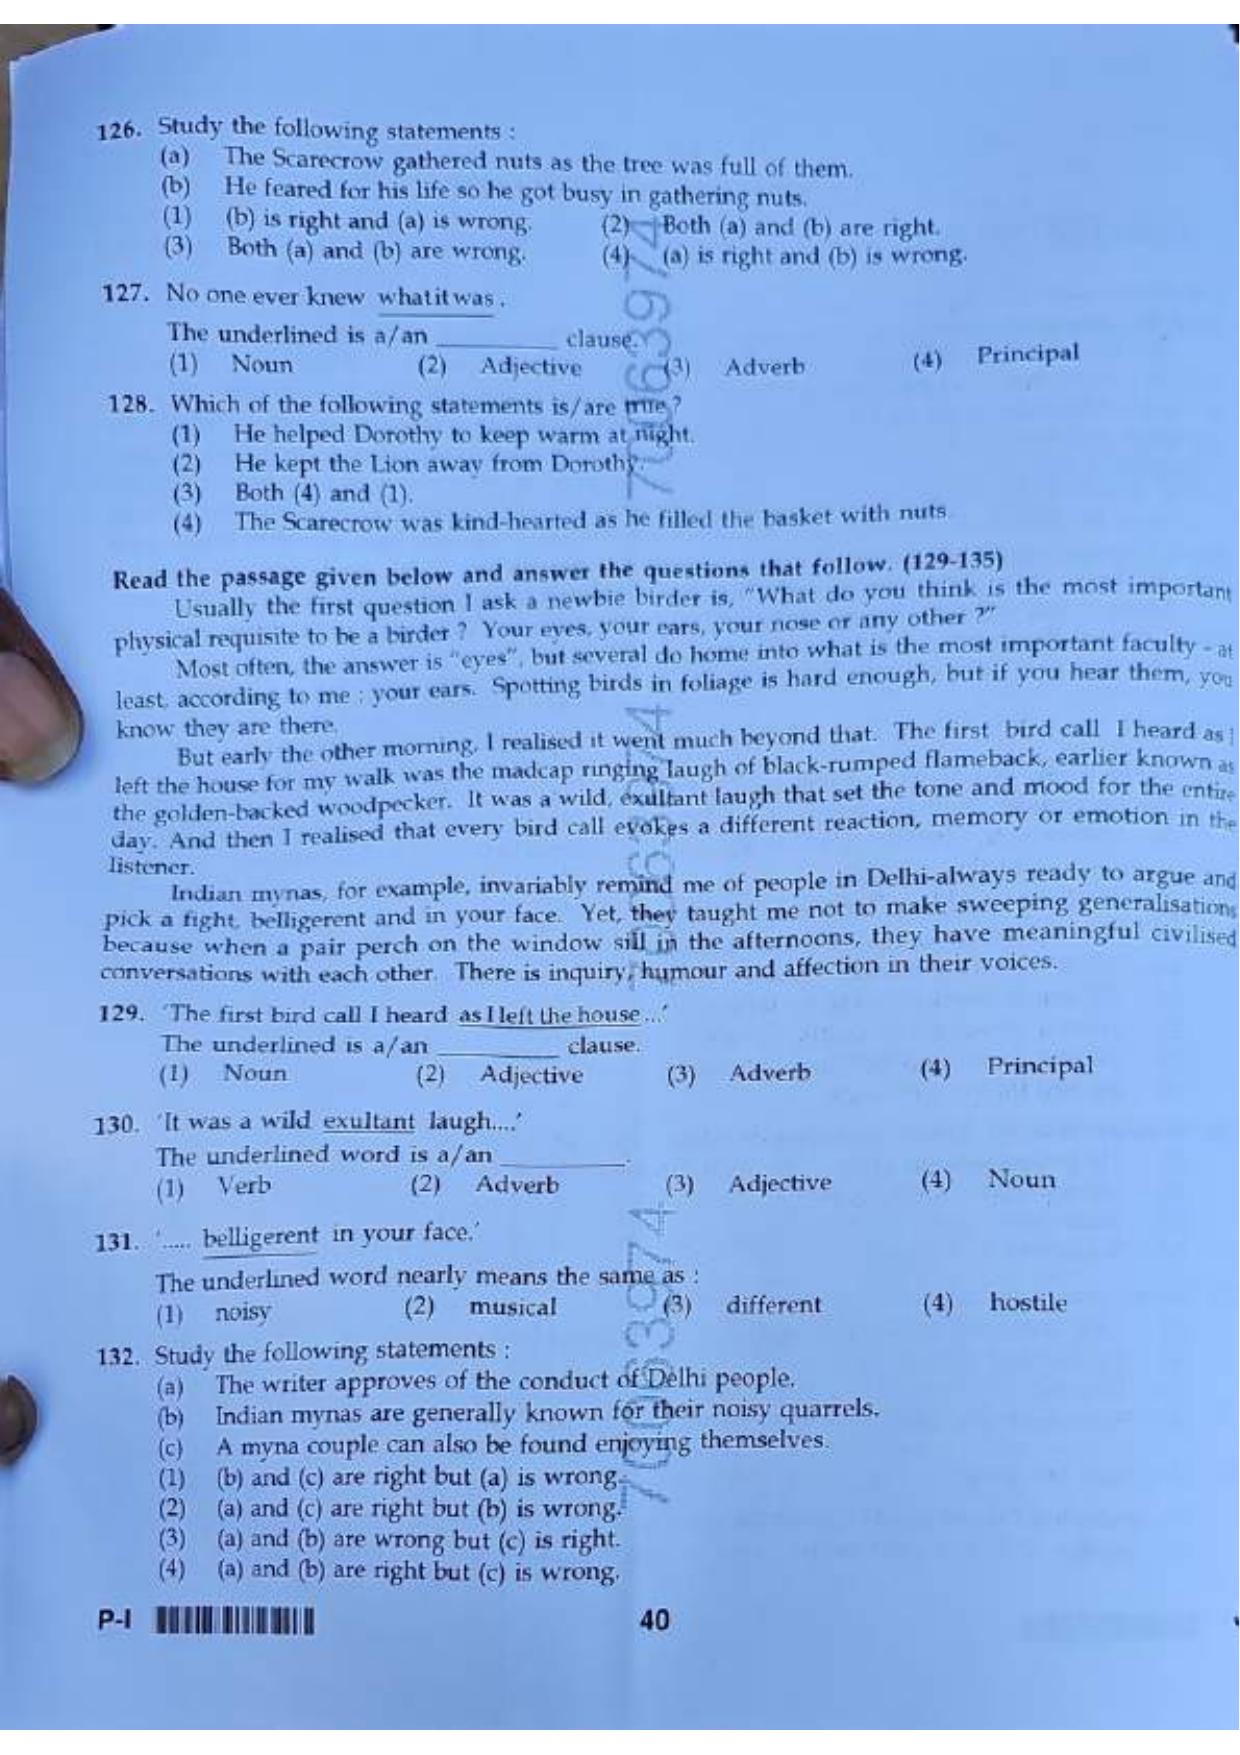 ctet paper 1 question paper SET J - Page 39